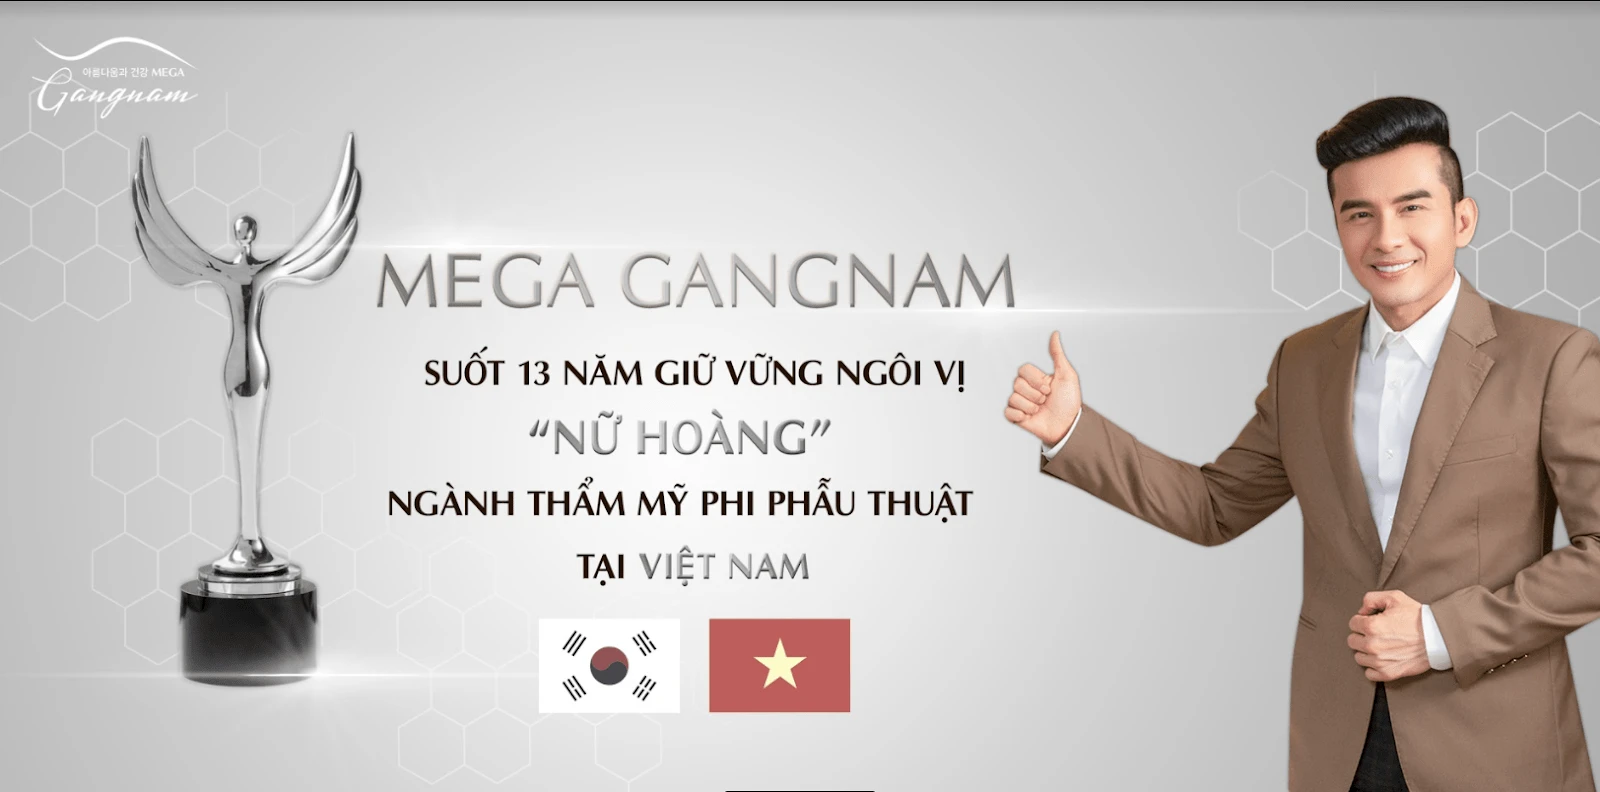 Trải qua hơn 13 năm, Mega Gangnam dần khẳng định được vị trí của mình